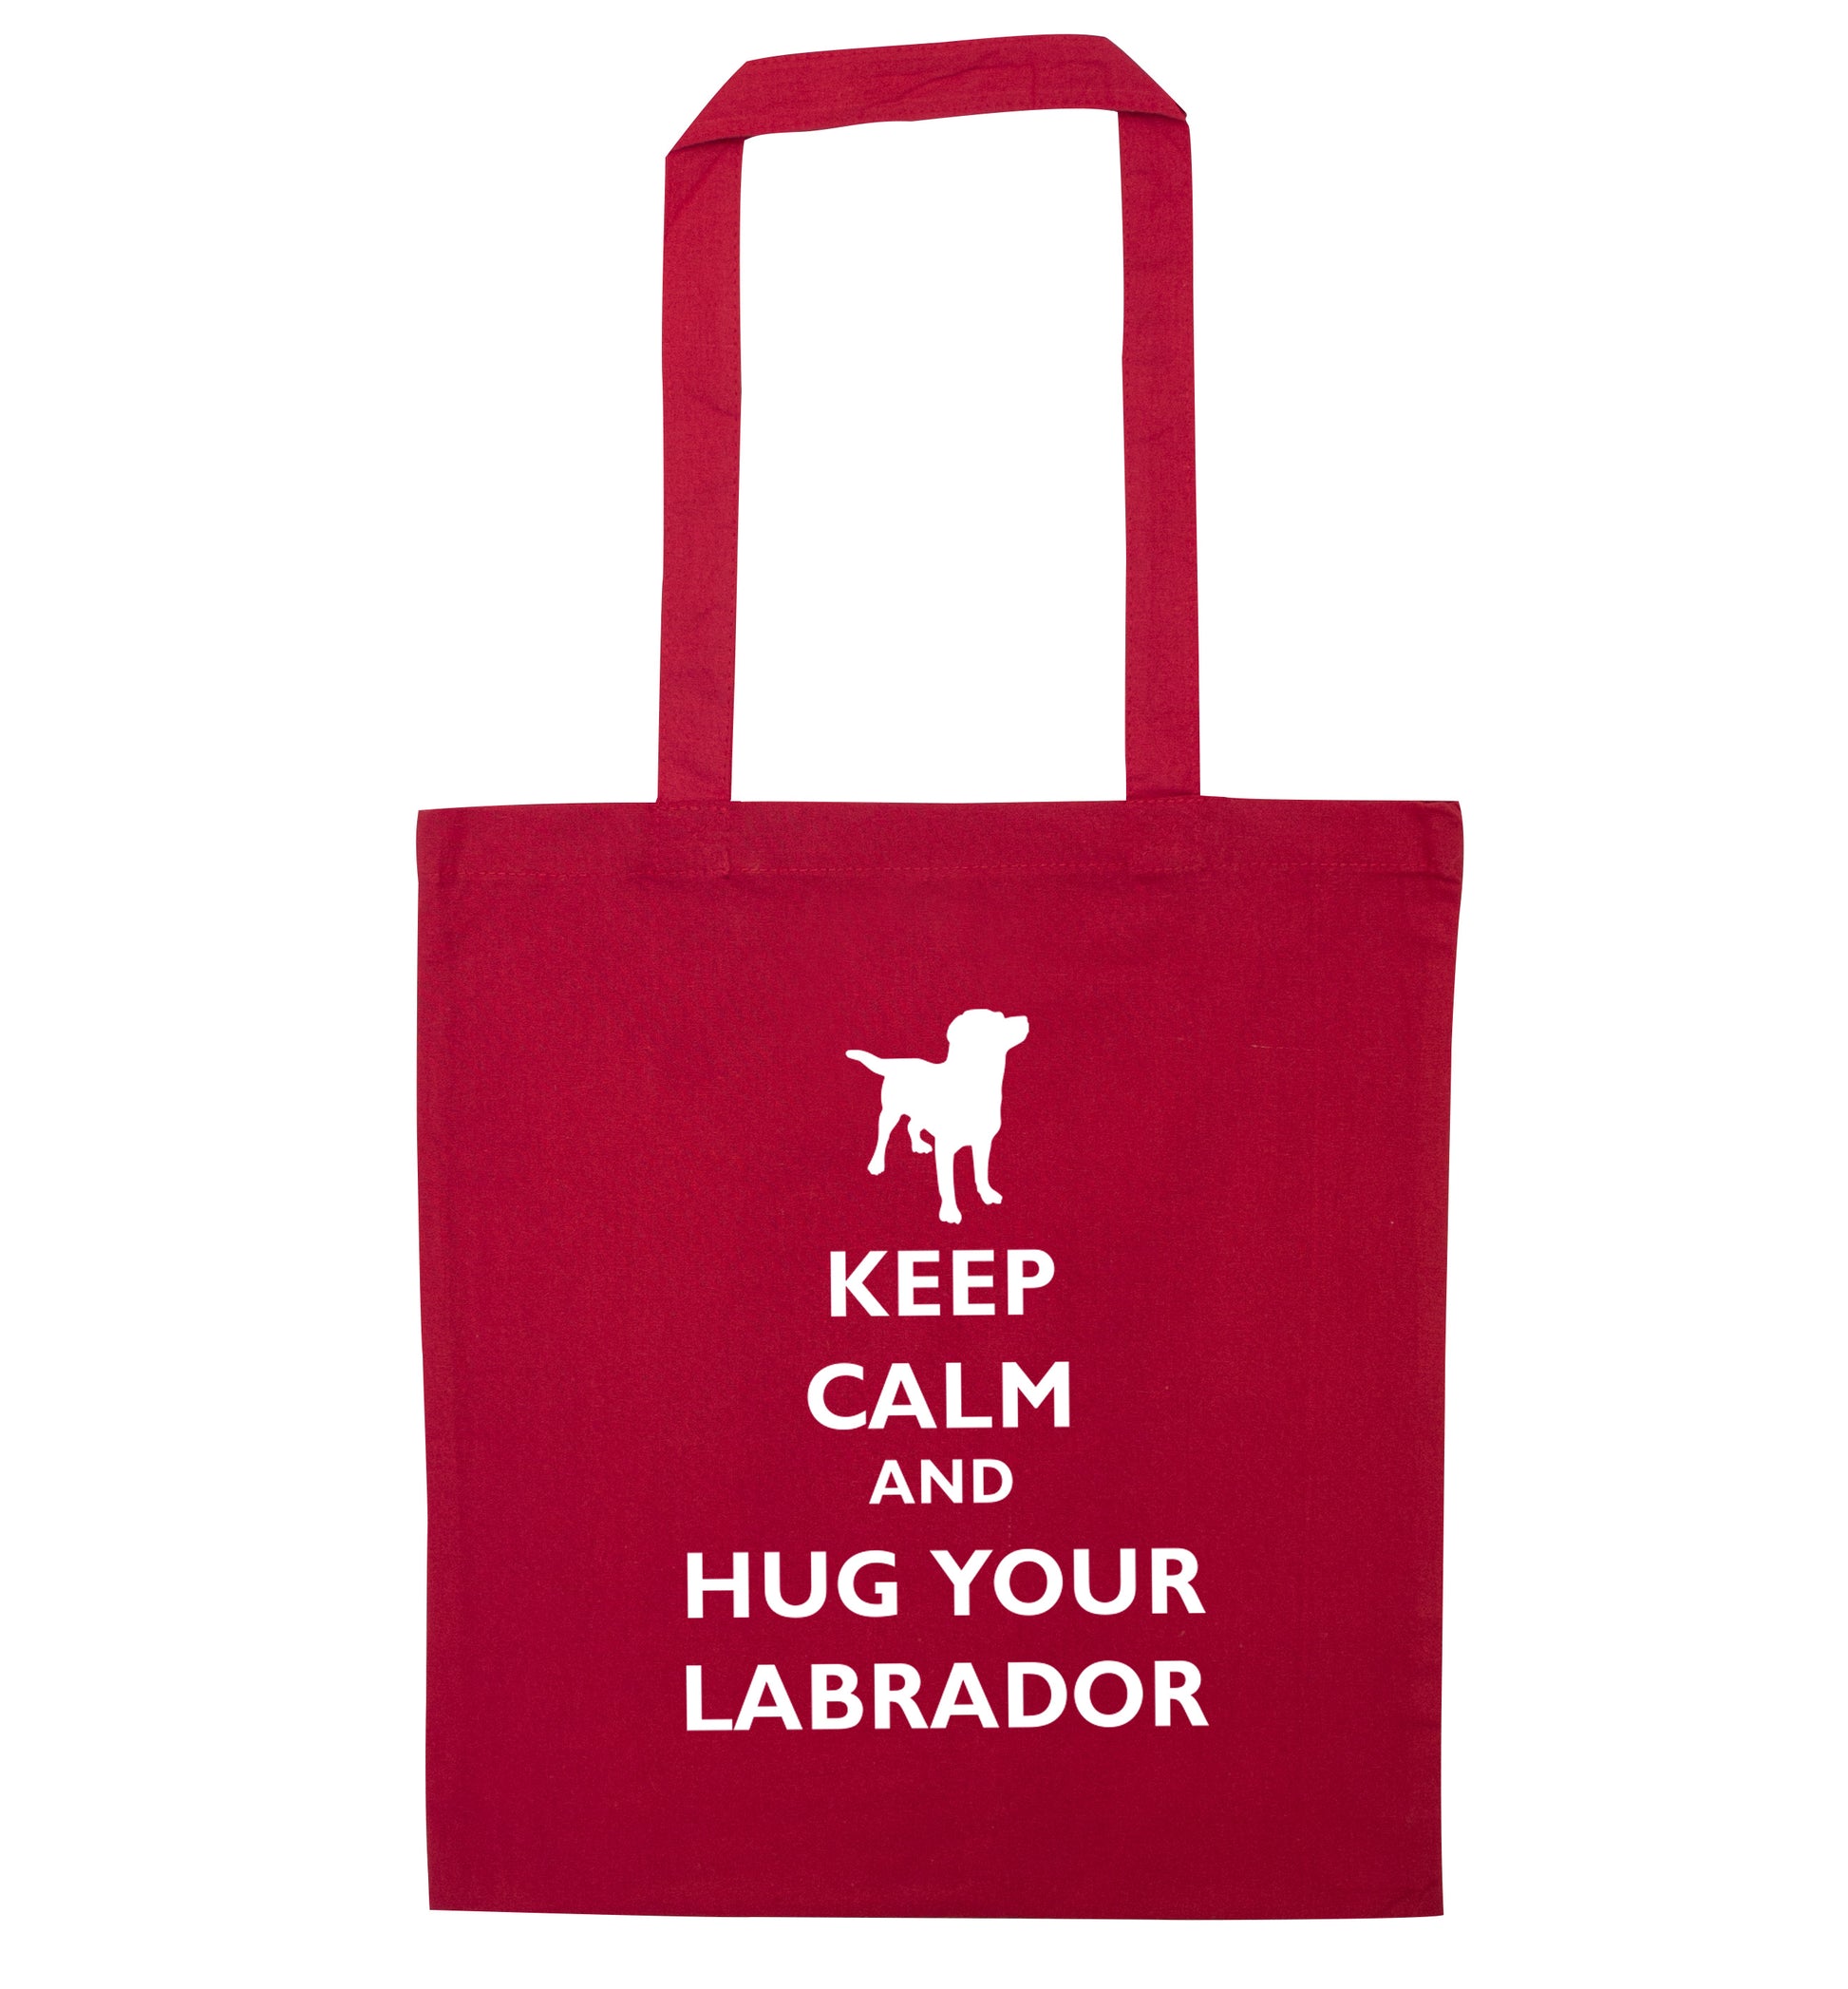 Keep calm and hug your labrador red tote bag